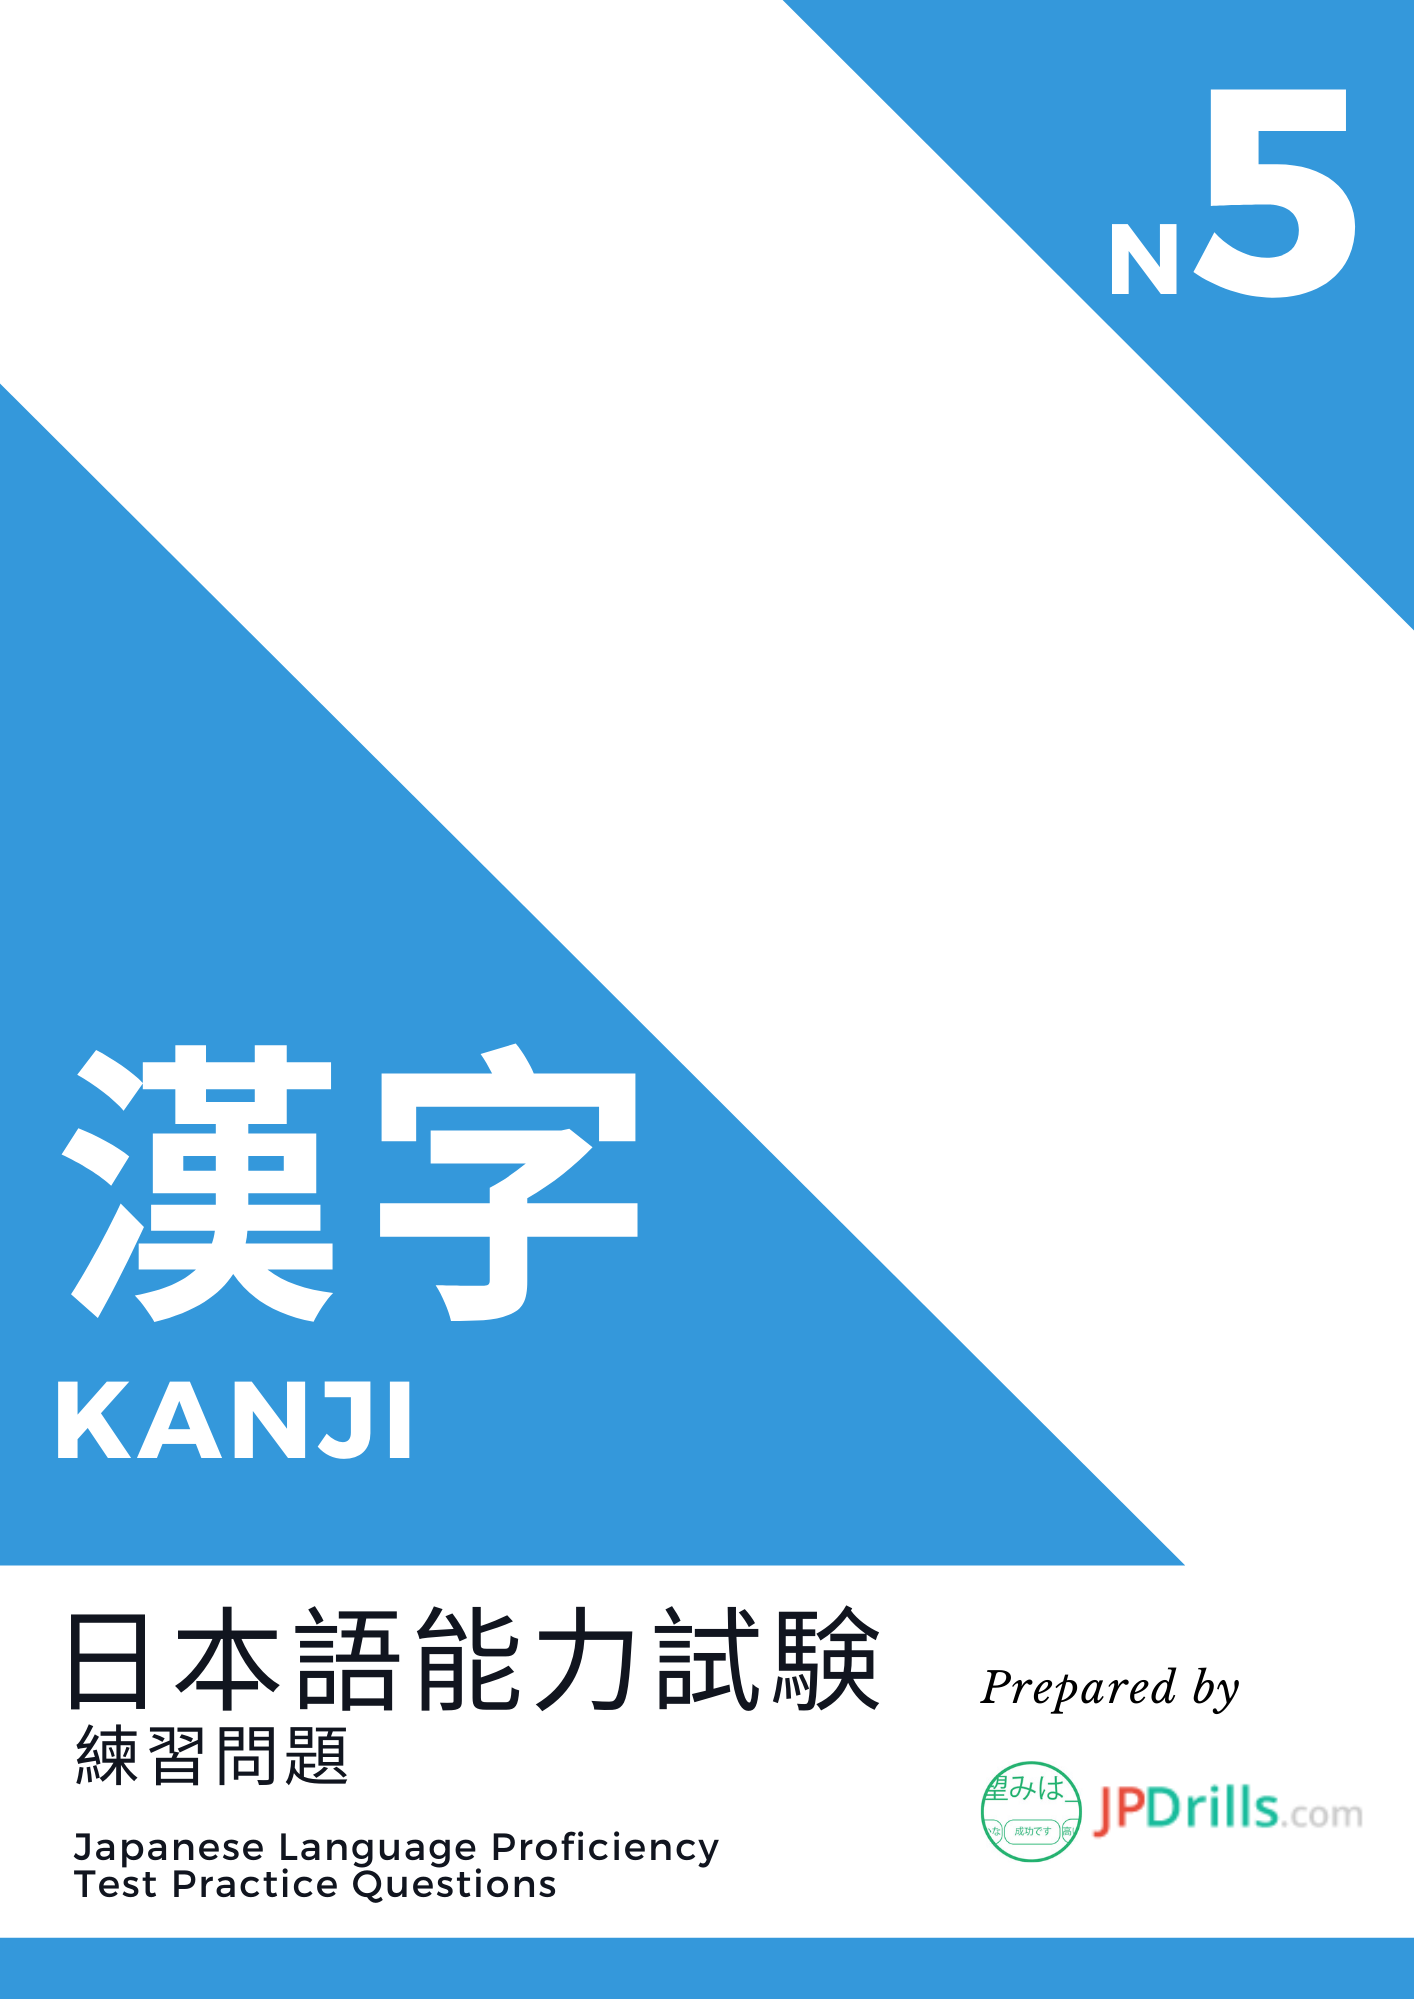 JLPT N5 Kanji quiz logo